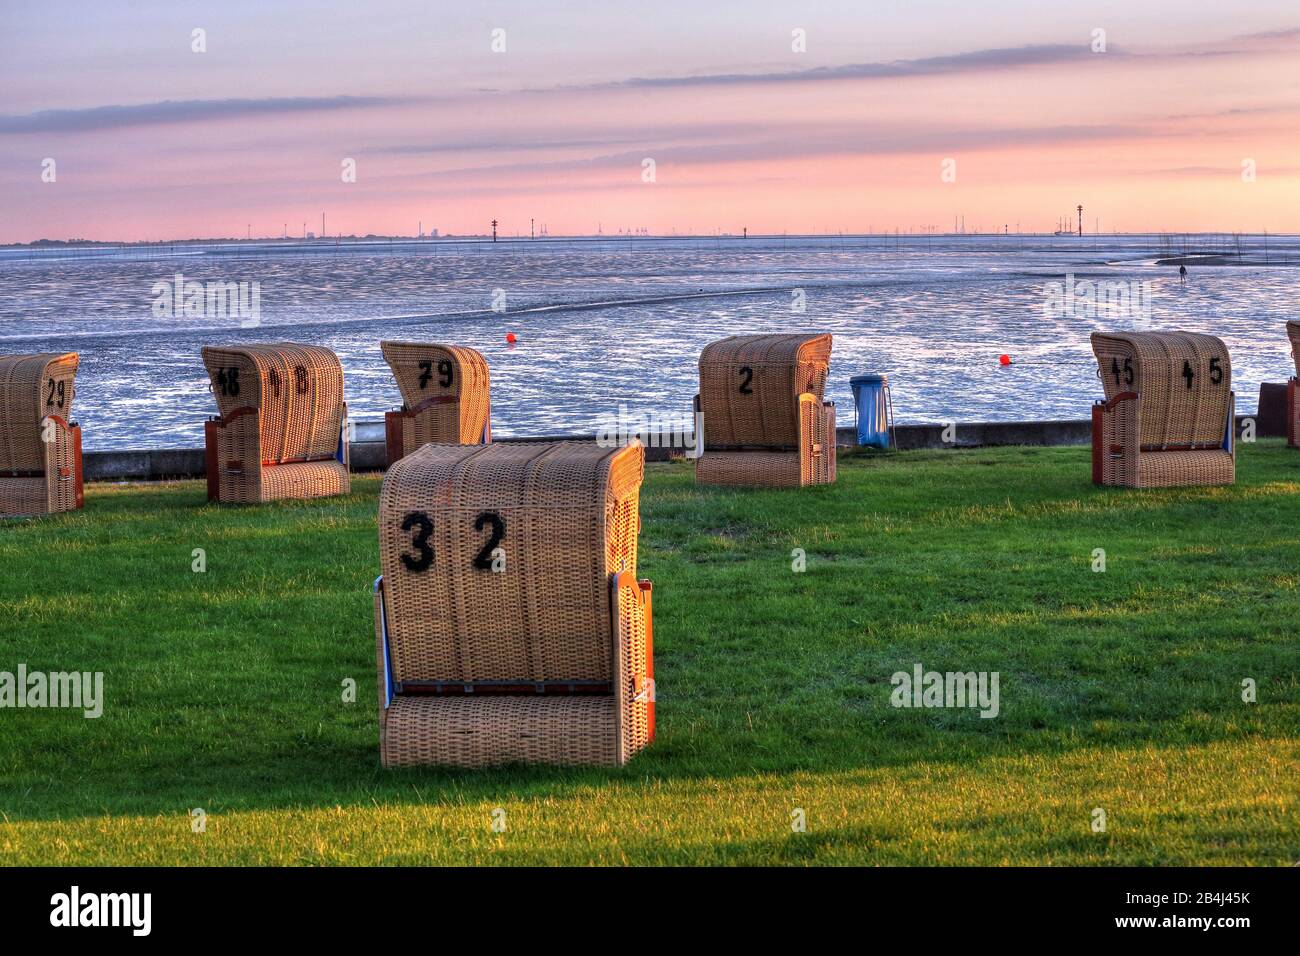 Plage d'herbe avec chaises de plage sur la mer des Wadden au soleil le soir, station balnéaire de la mer du Nord Wremen, Land Wursten, estuaire du Weser, mer du Nord, côte de la mer du Nord, parc national de la mer des Wadden de Basse-Saxe, Allemagne Banque D'Images